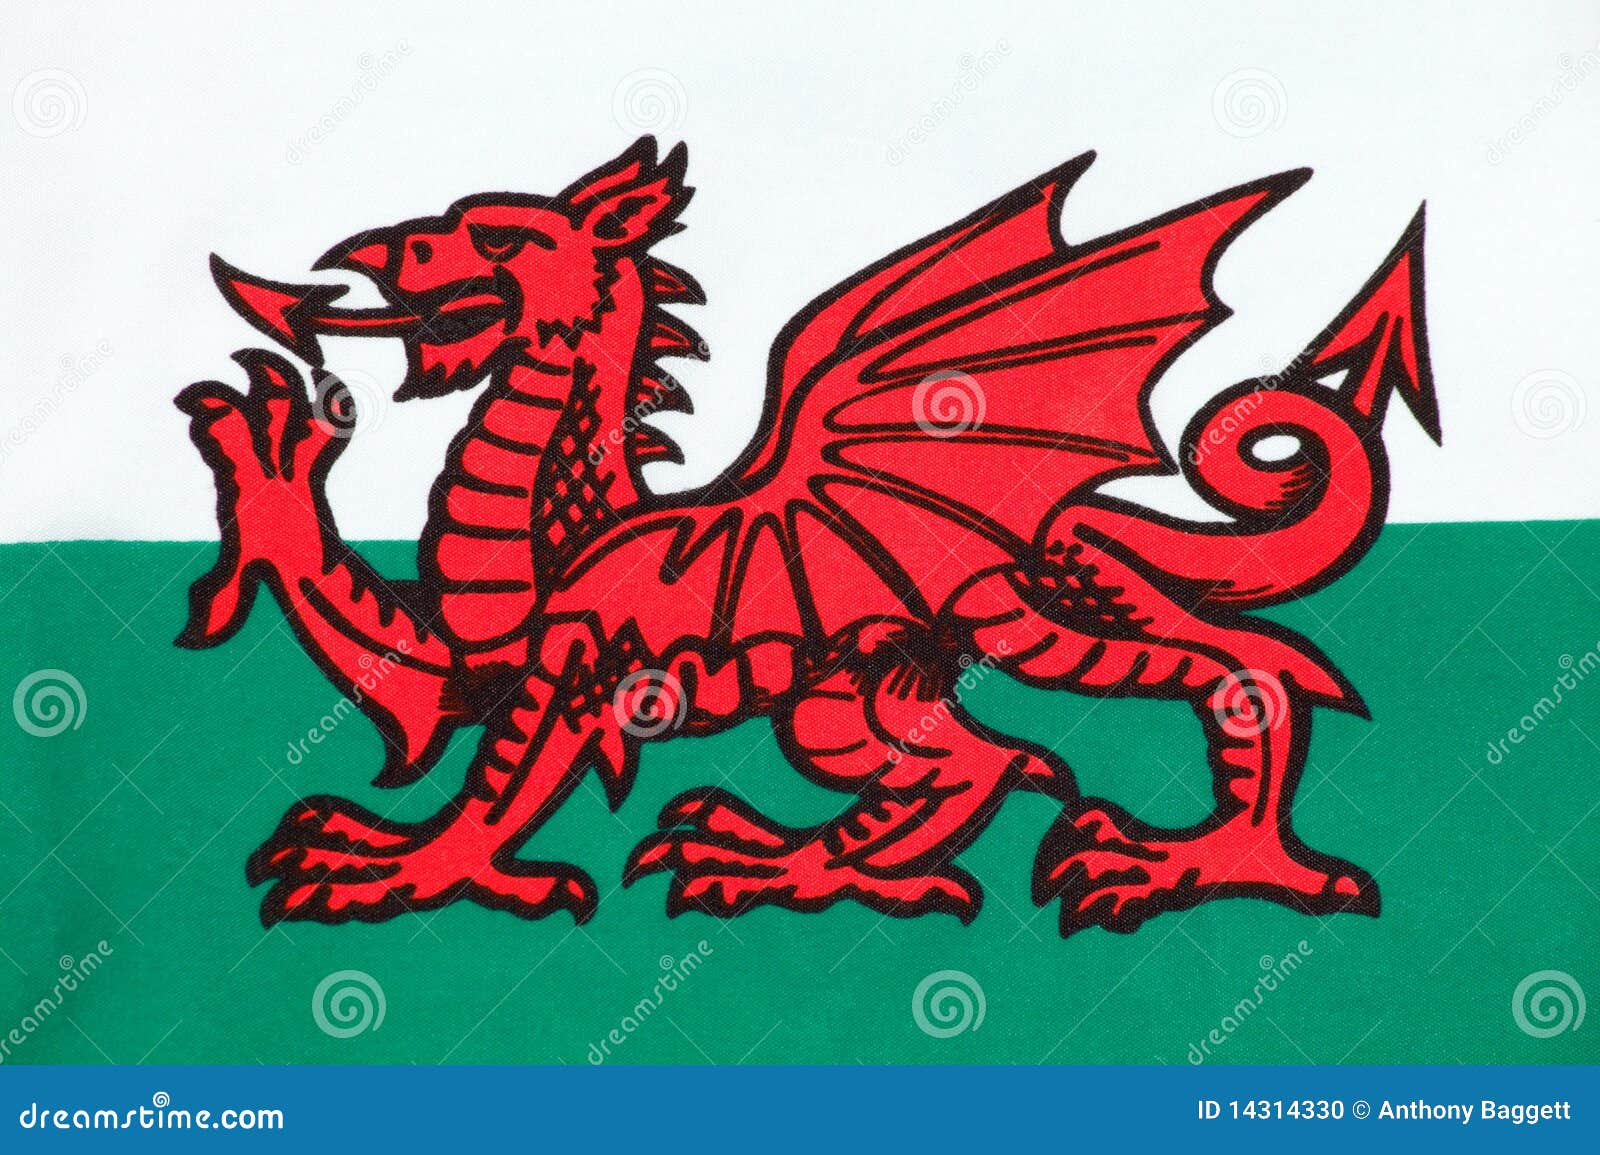 Welsh. Национальный флаг Уэльса. Уэльс флаг флаг. Красный дракон на флаге Уэльса. Дракон на флаге Уэльса.